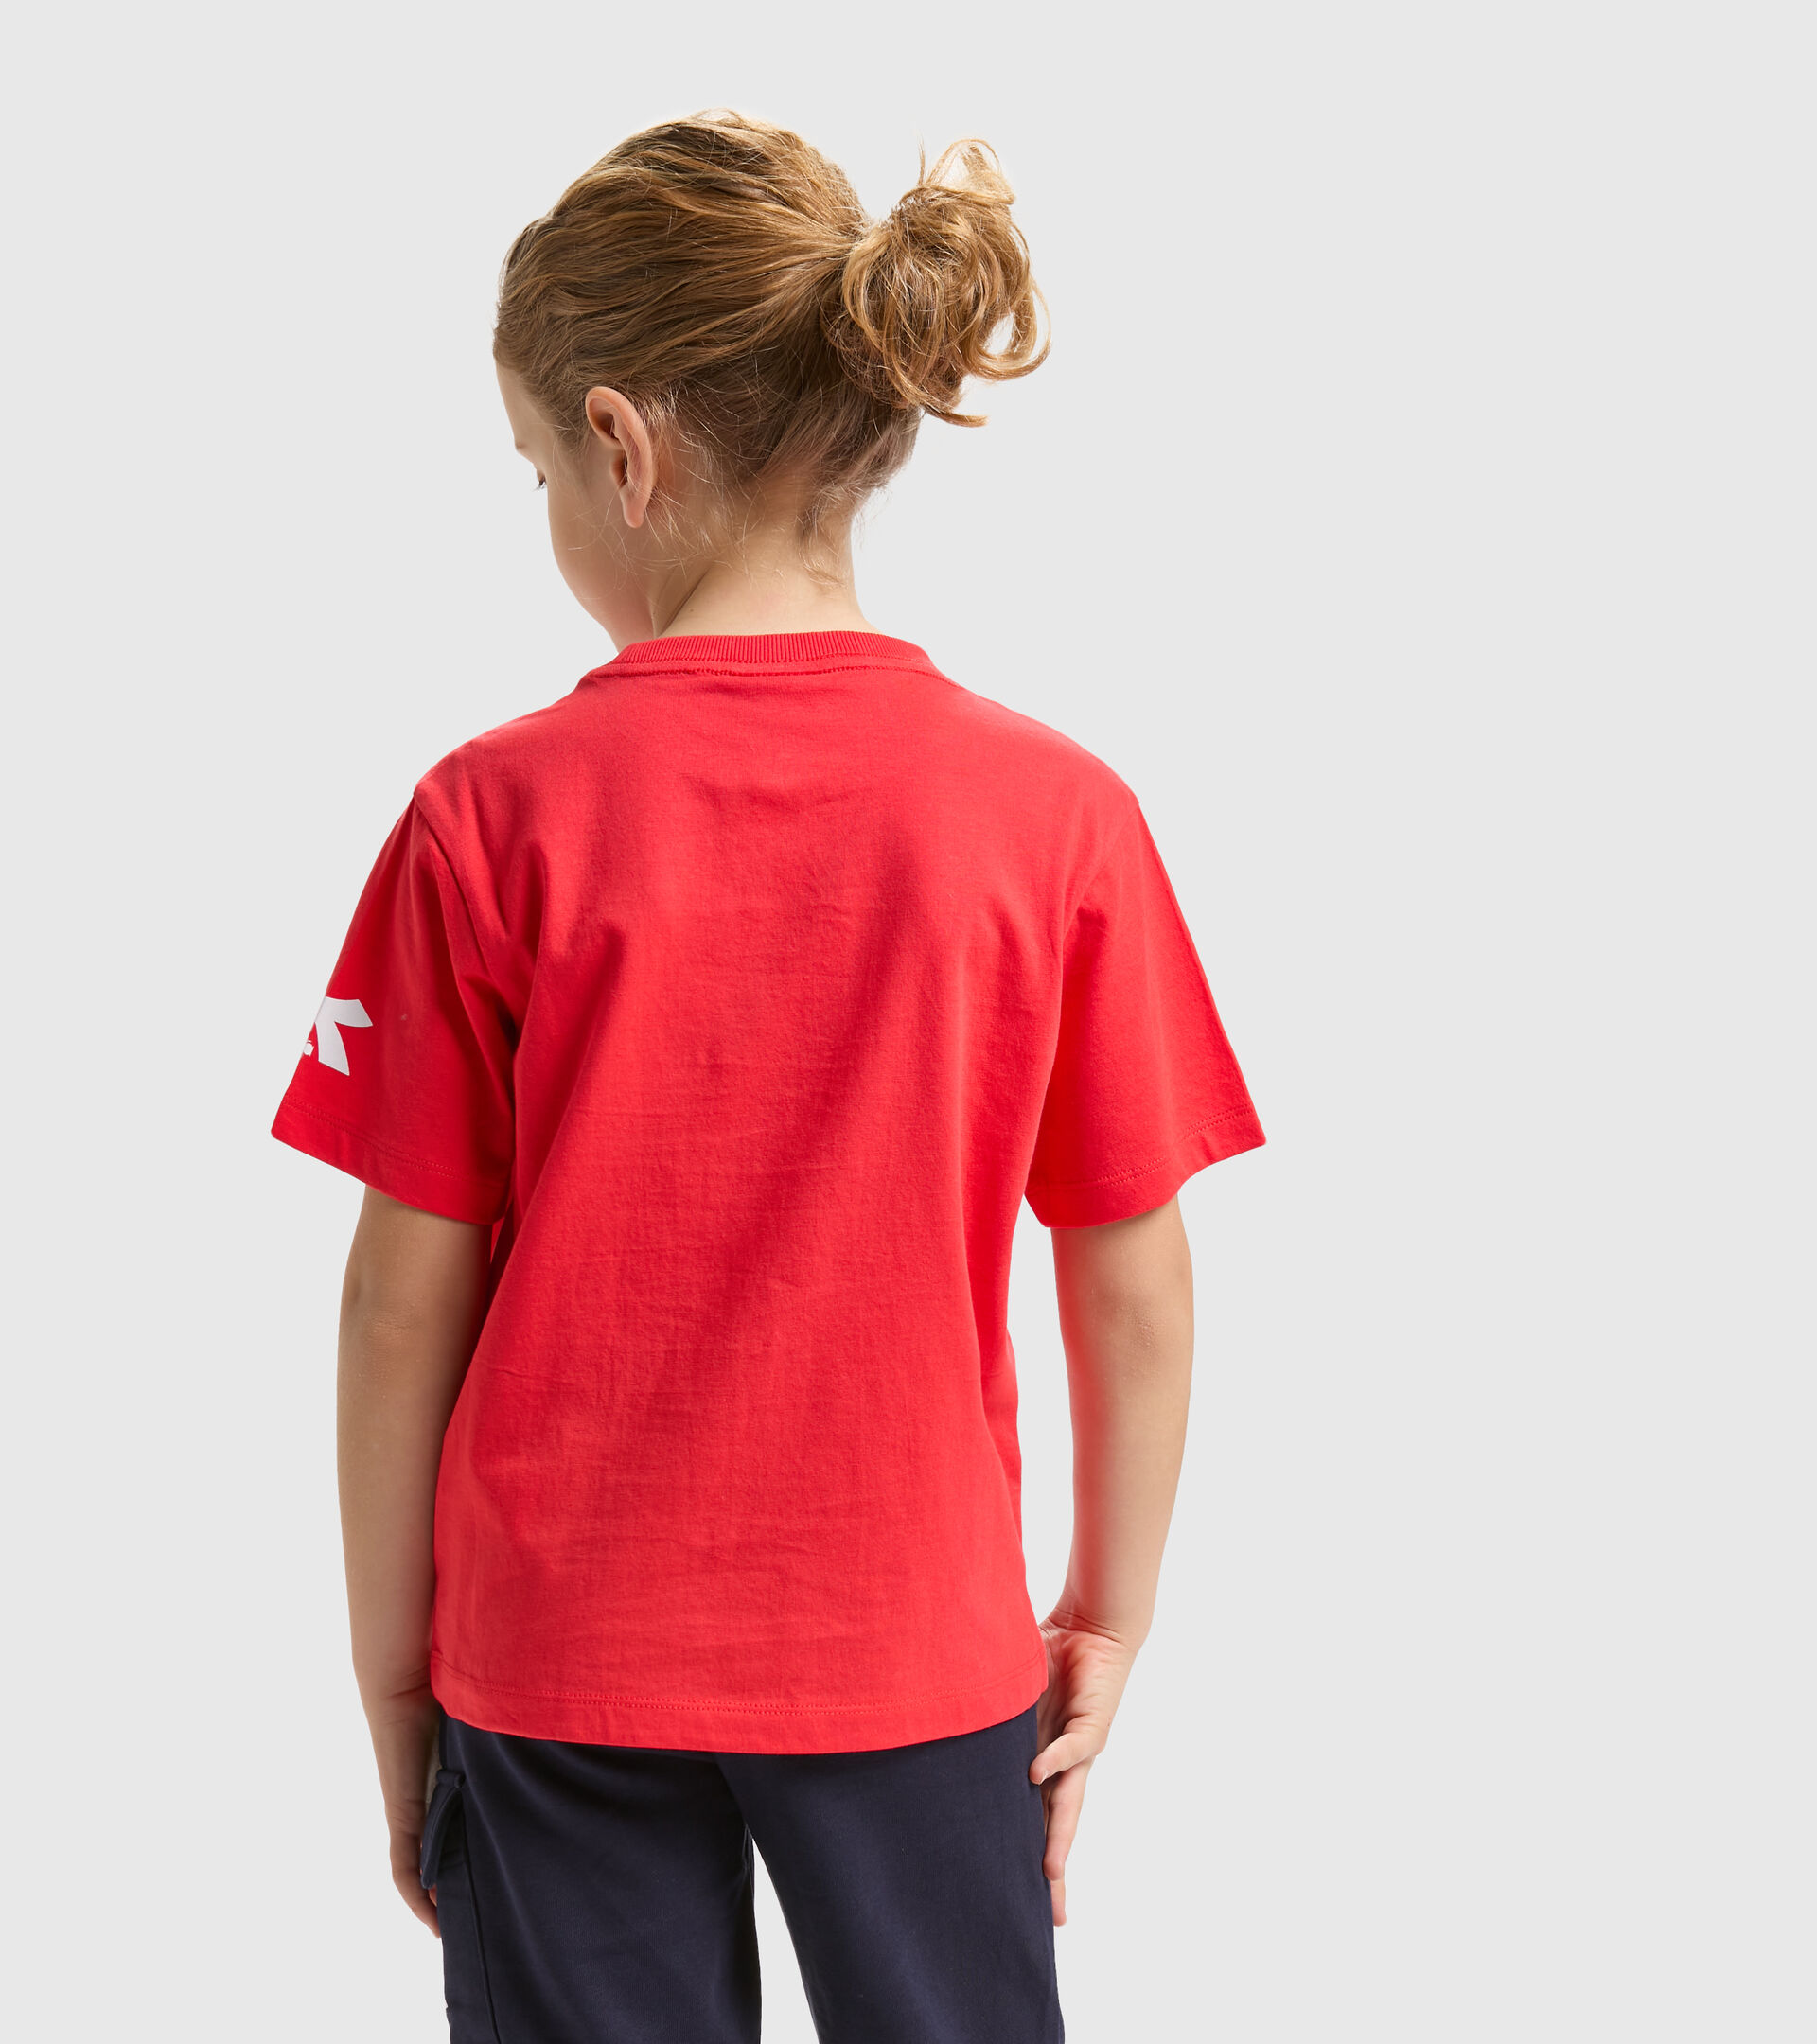 Camiseta deportiva de algodón - Niños y adolescentes JB.T-SHIRT SS DIADORA FC ROJO AMAPOLA - Diadora